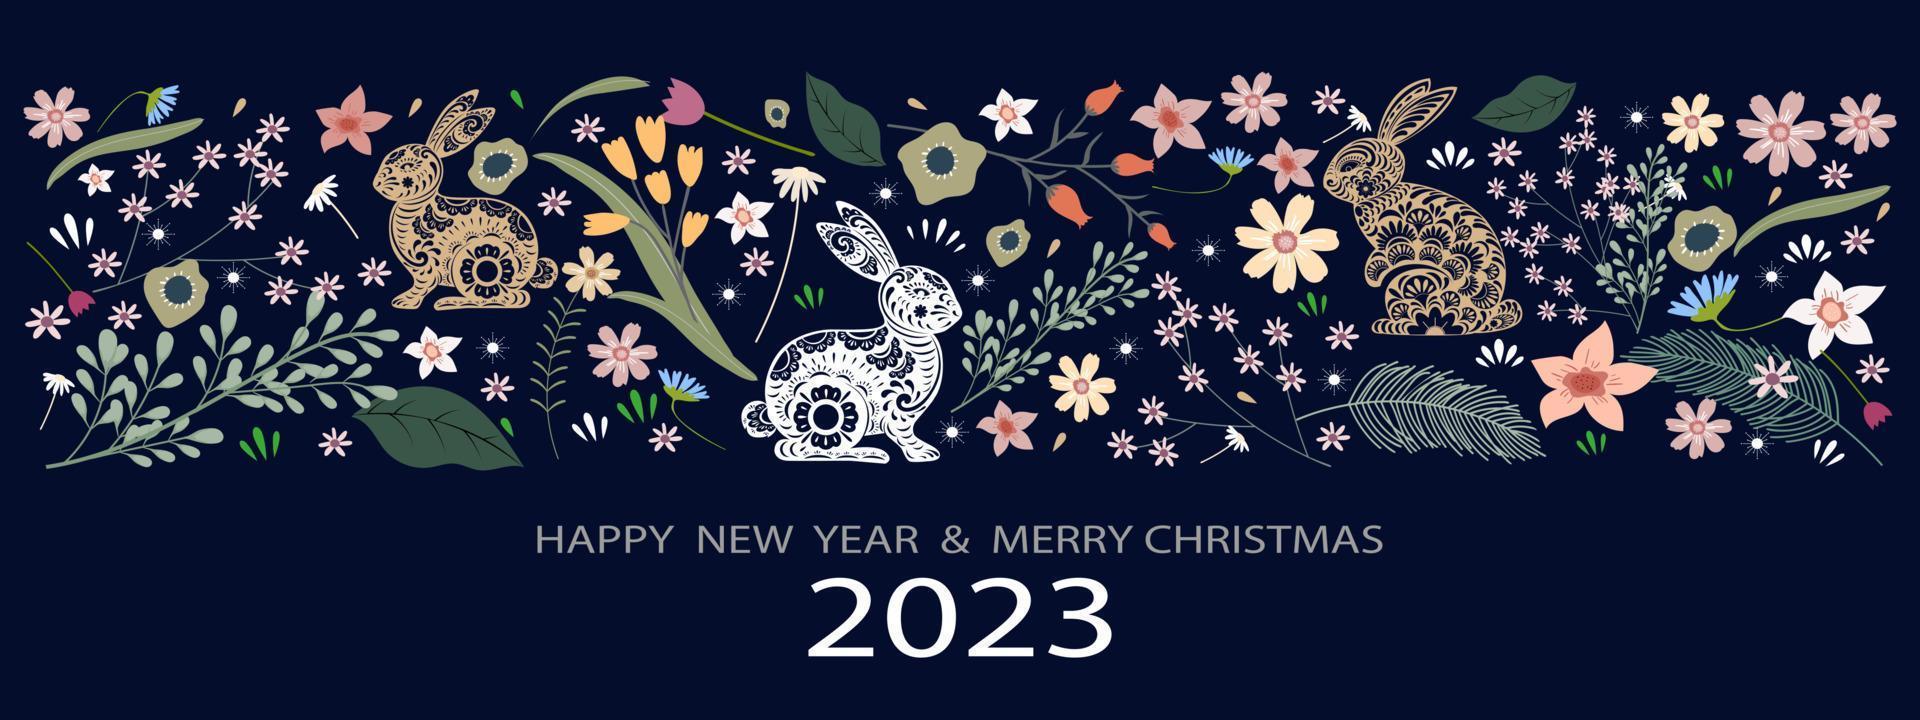 2023 feliz año nuevo y alegre pancarta navideña, hermosa tarjeta de saludo vectorial o telón de fondo para conejos cortados en papel con adorables flores multicolores de primavera y otros elementos sobre fondo azul. vector